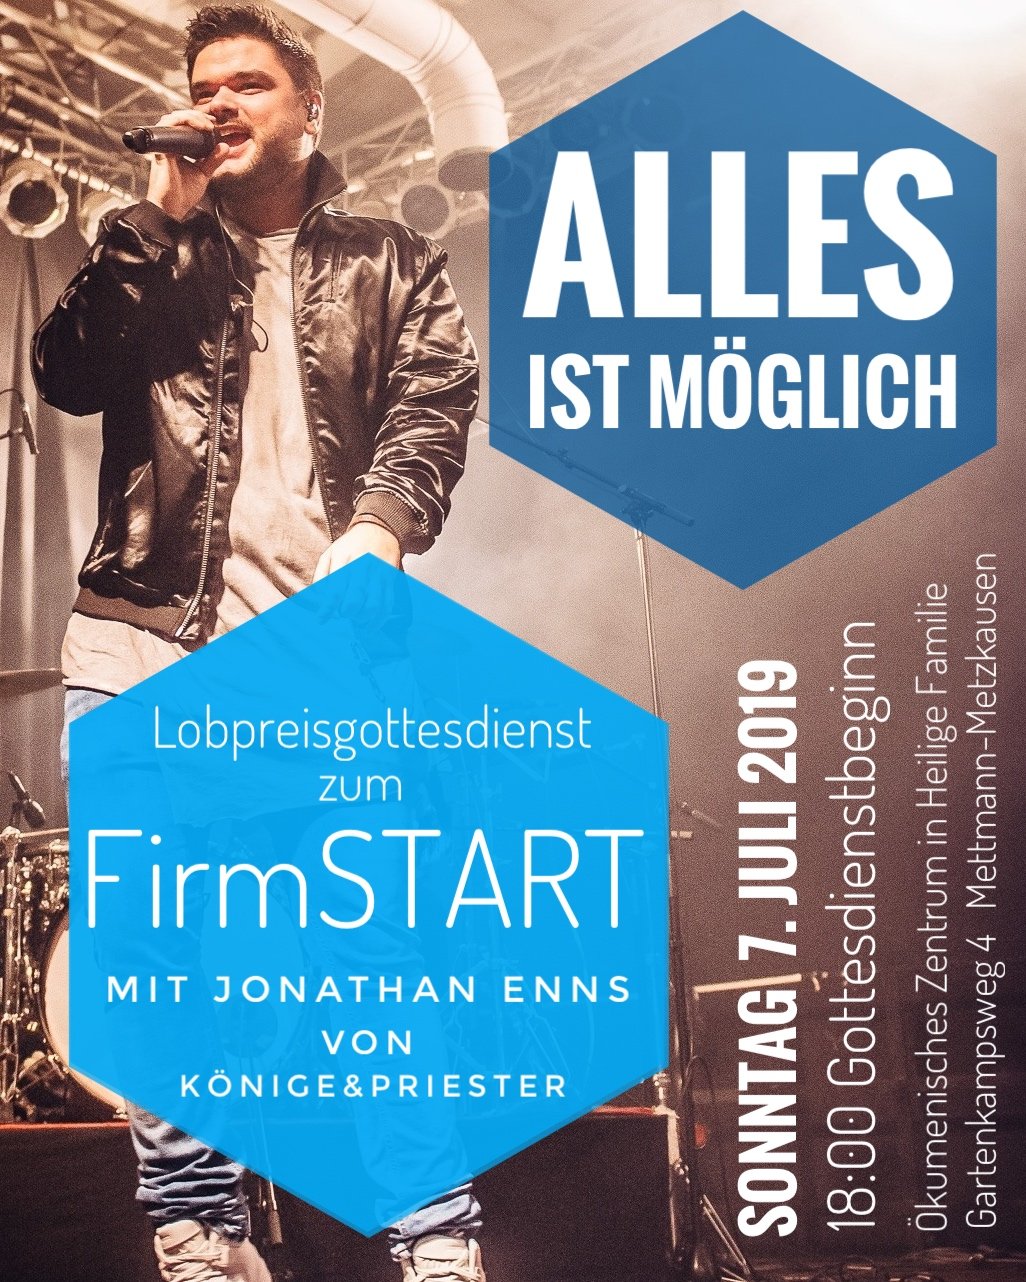 FirmSTART 2019B - Plakat (c) Pfarrei St. Lambertus Mettmann